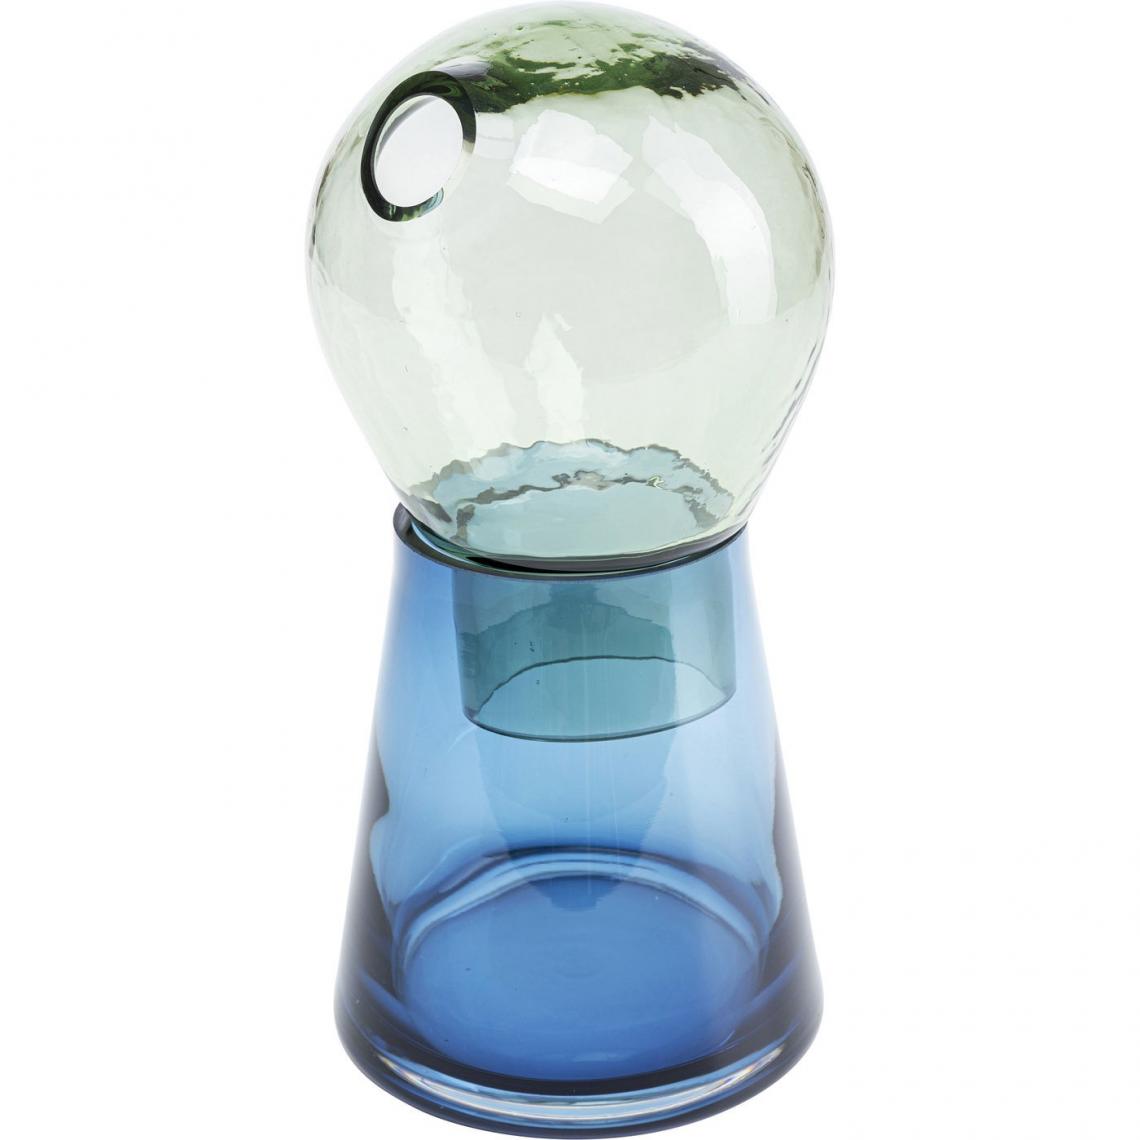 Karedesign - Vase Skittle 28cm Kare Design - Vases